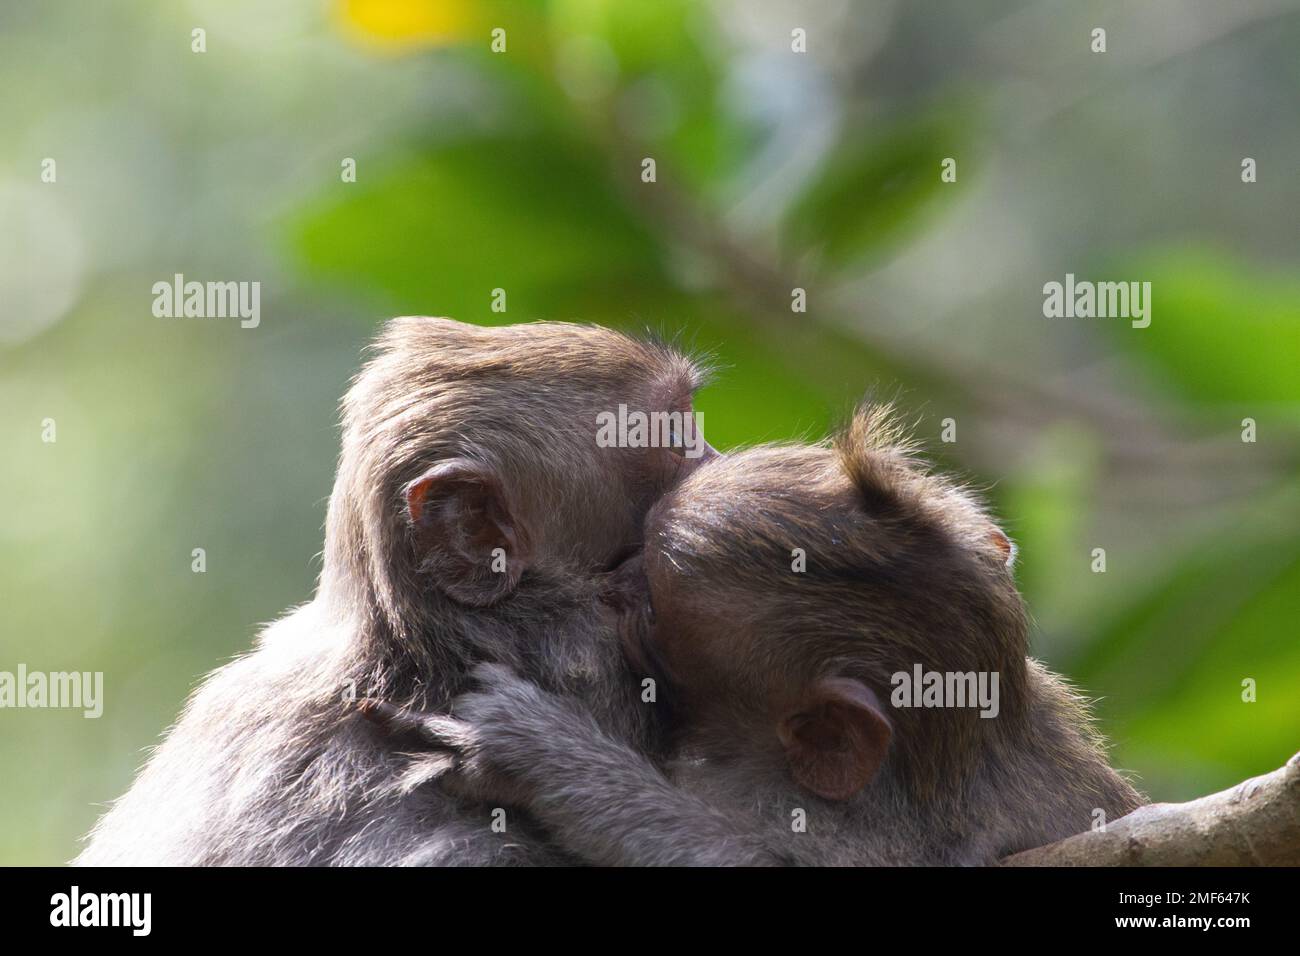 Un beau couple de singes se embrassant sur un arrière-plan flou Banque D'Images